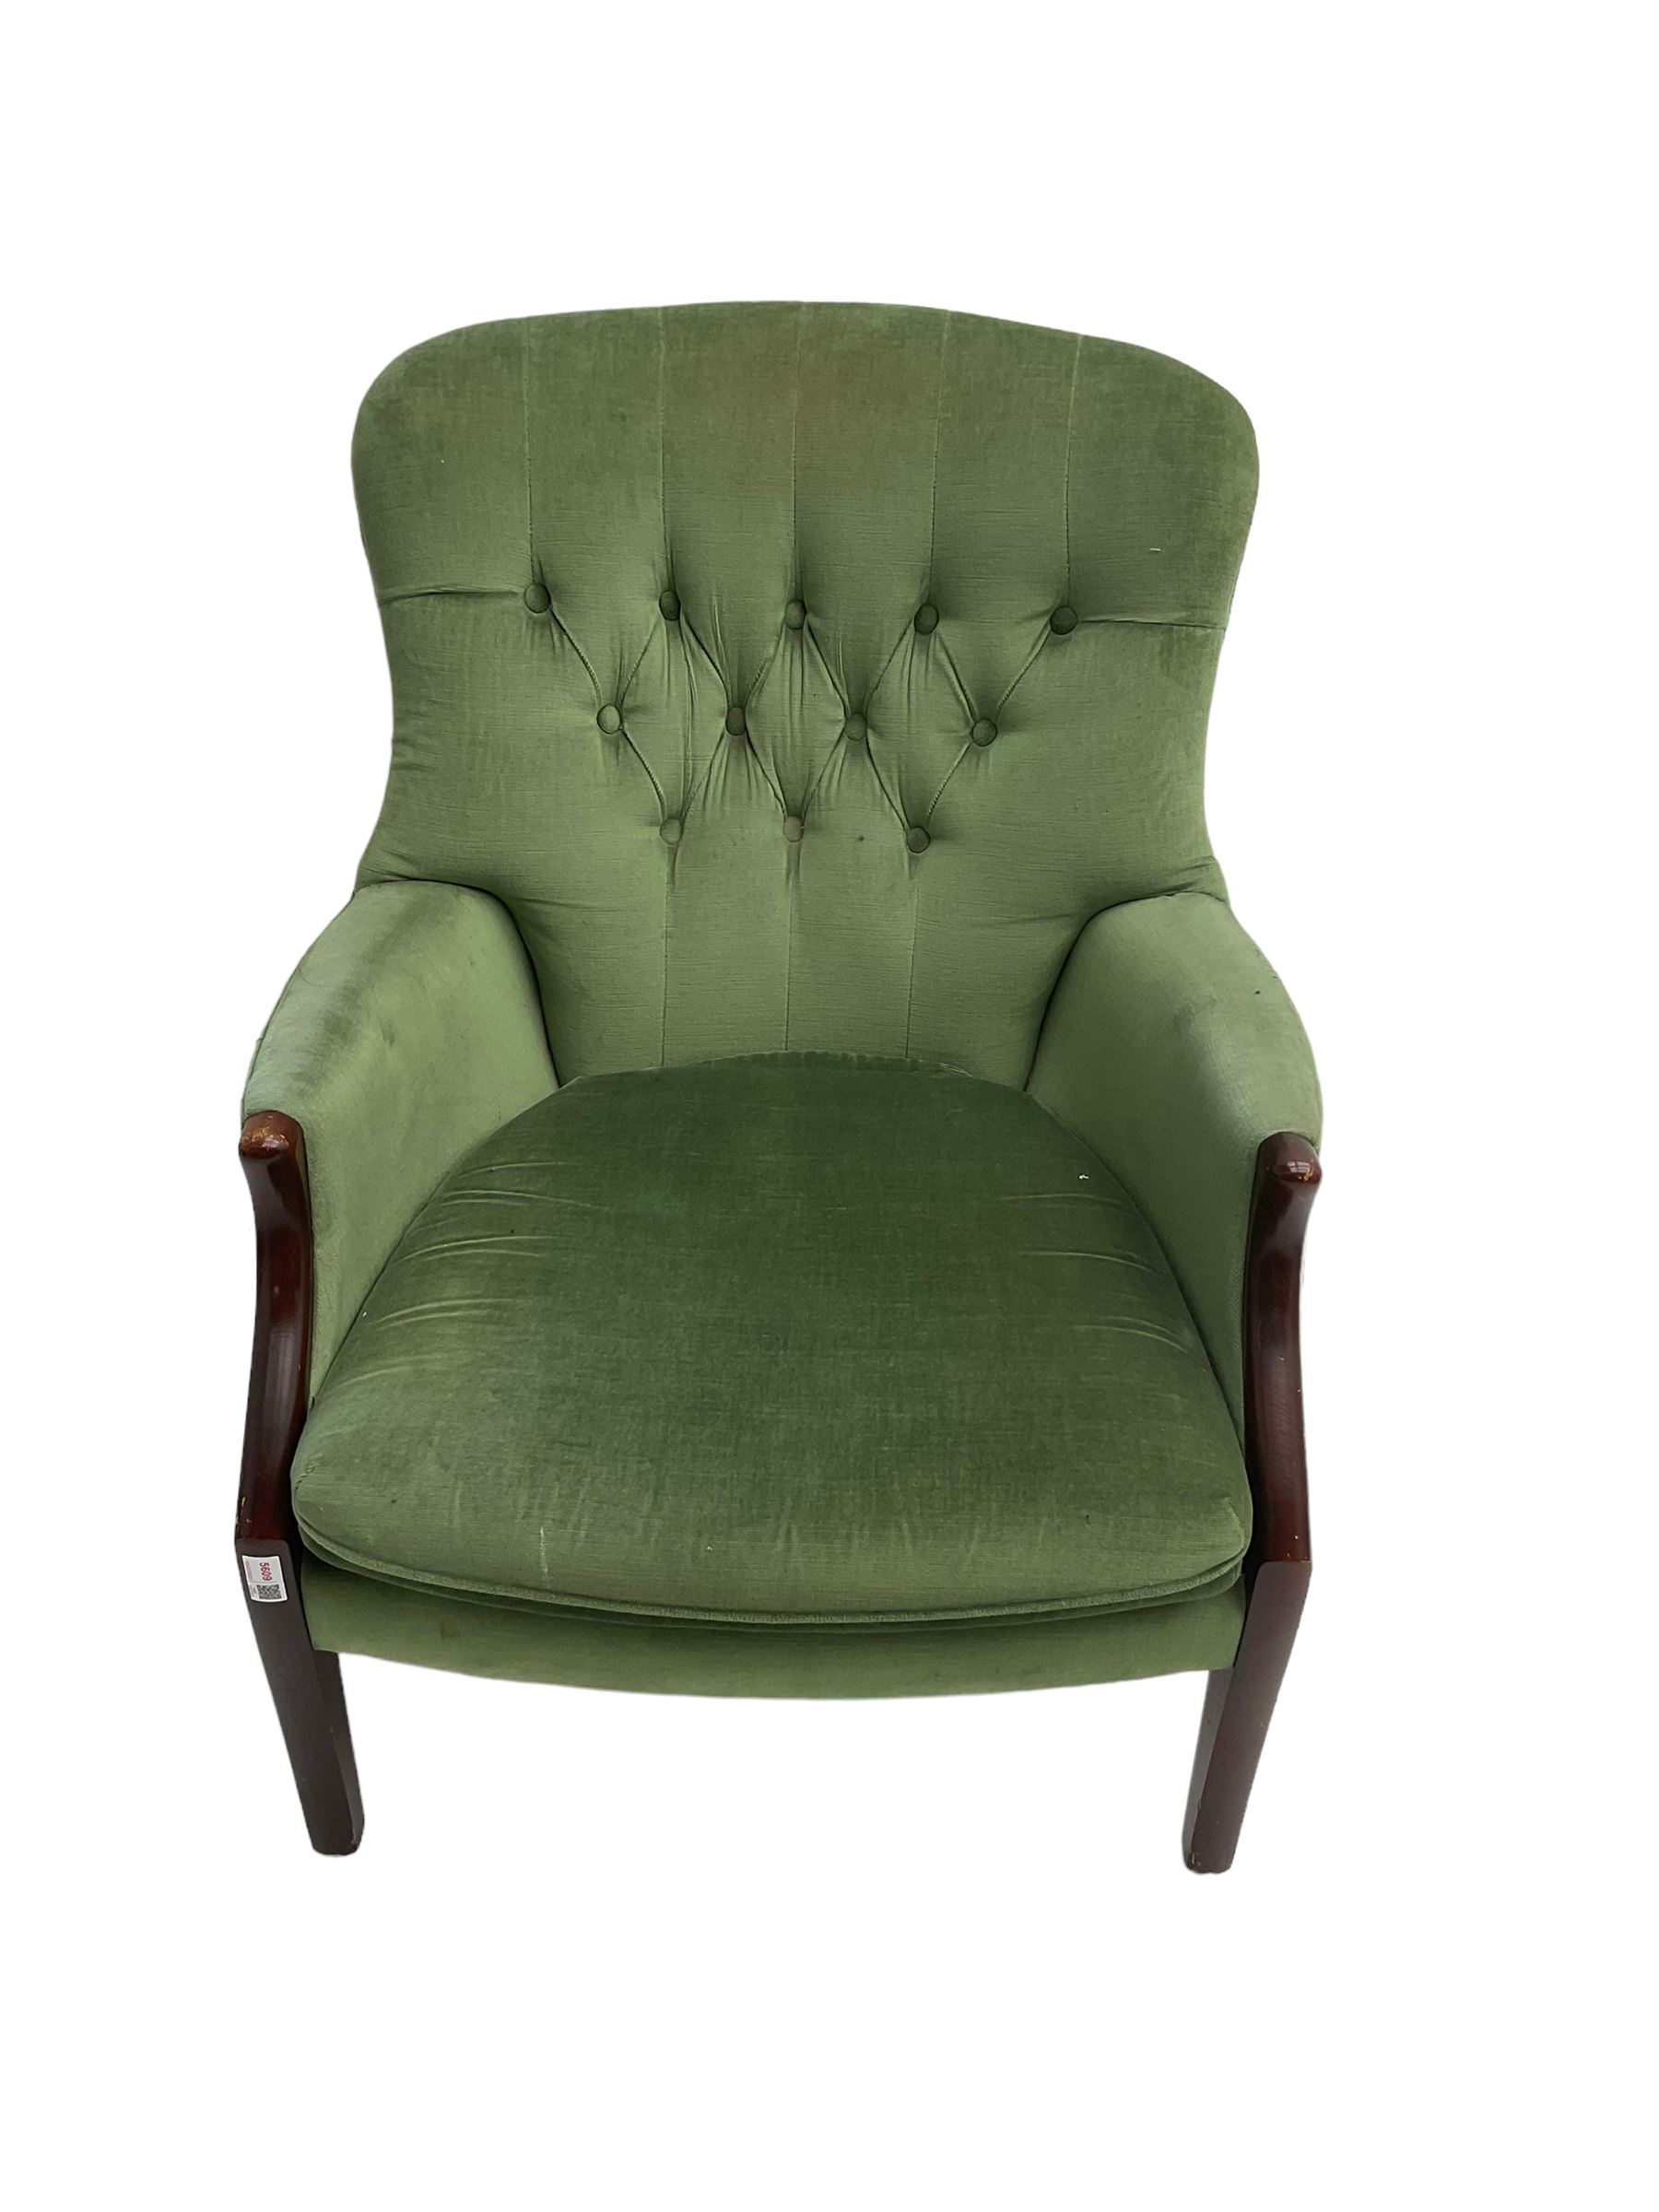 Parker Knoll - hardwood framed armchair - Image 2 of 6